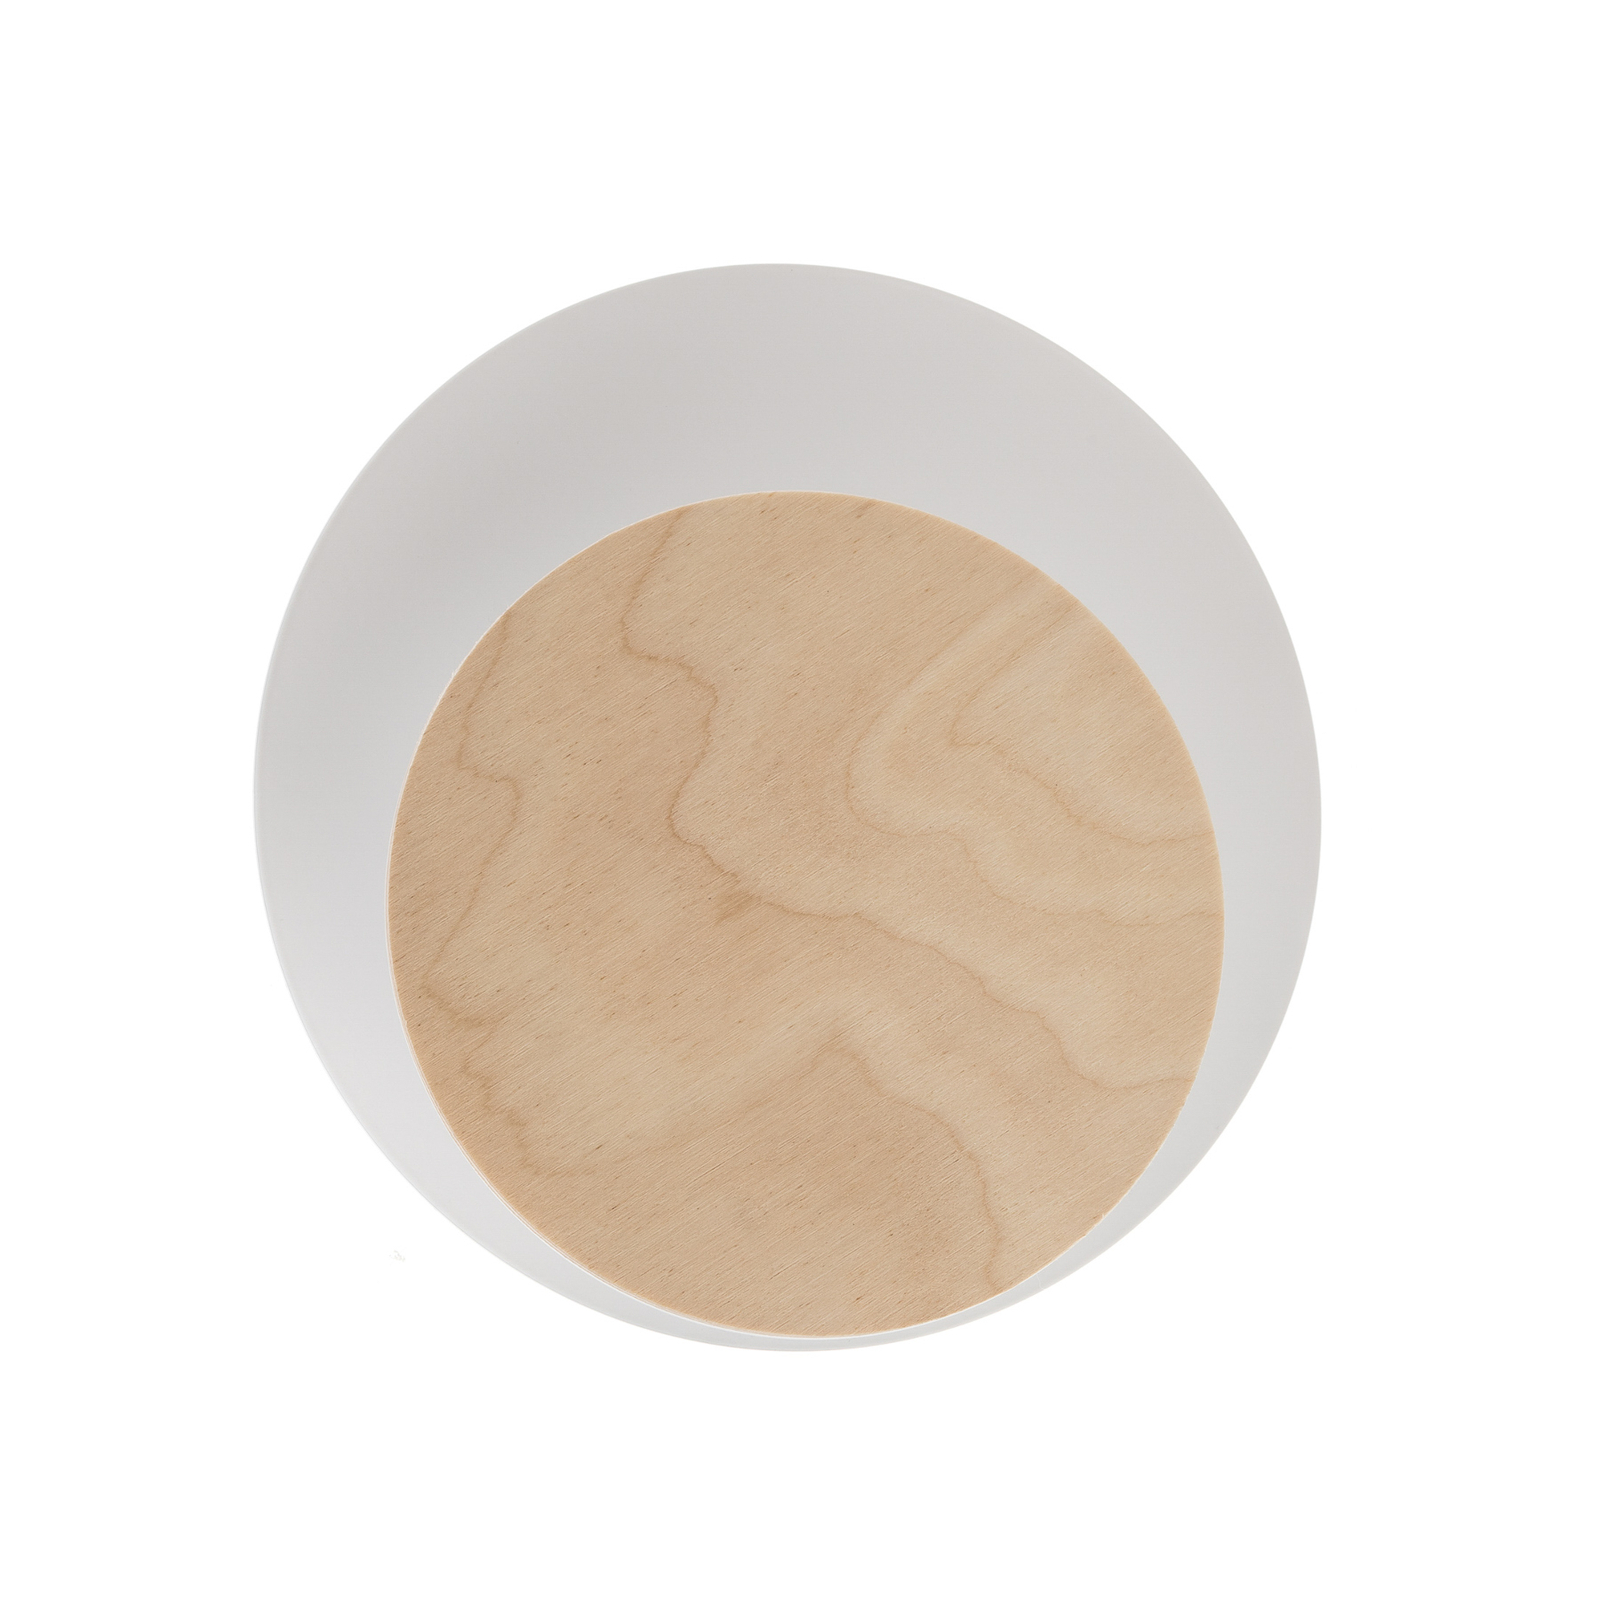 Kinkiet Circle biały, płyta dekoracyjna z drewna